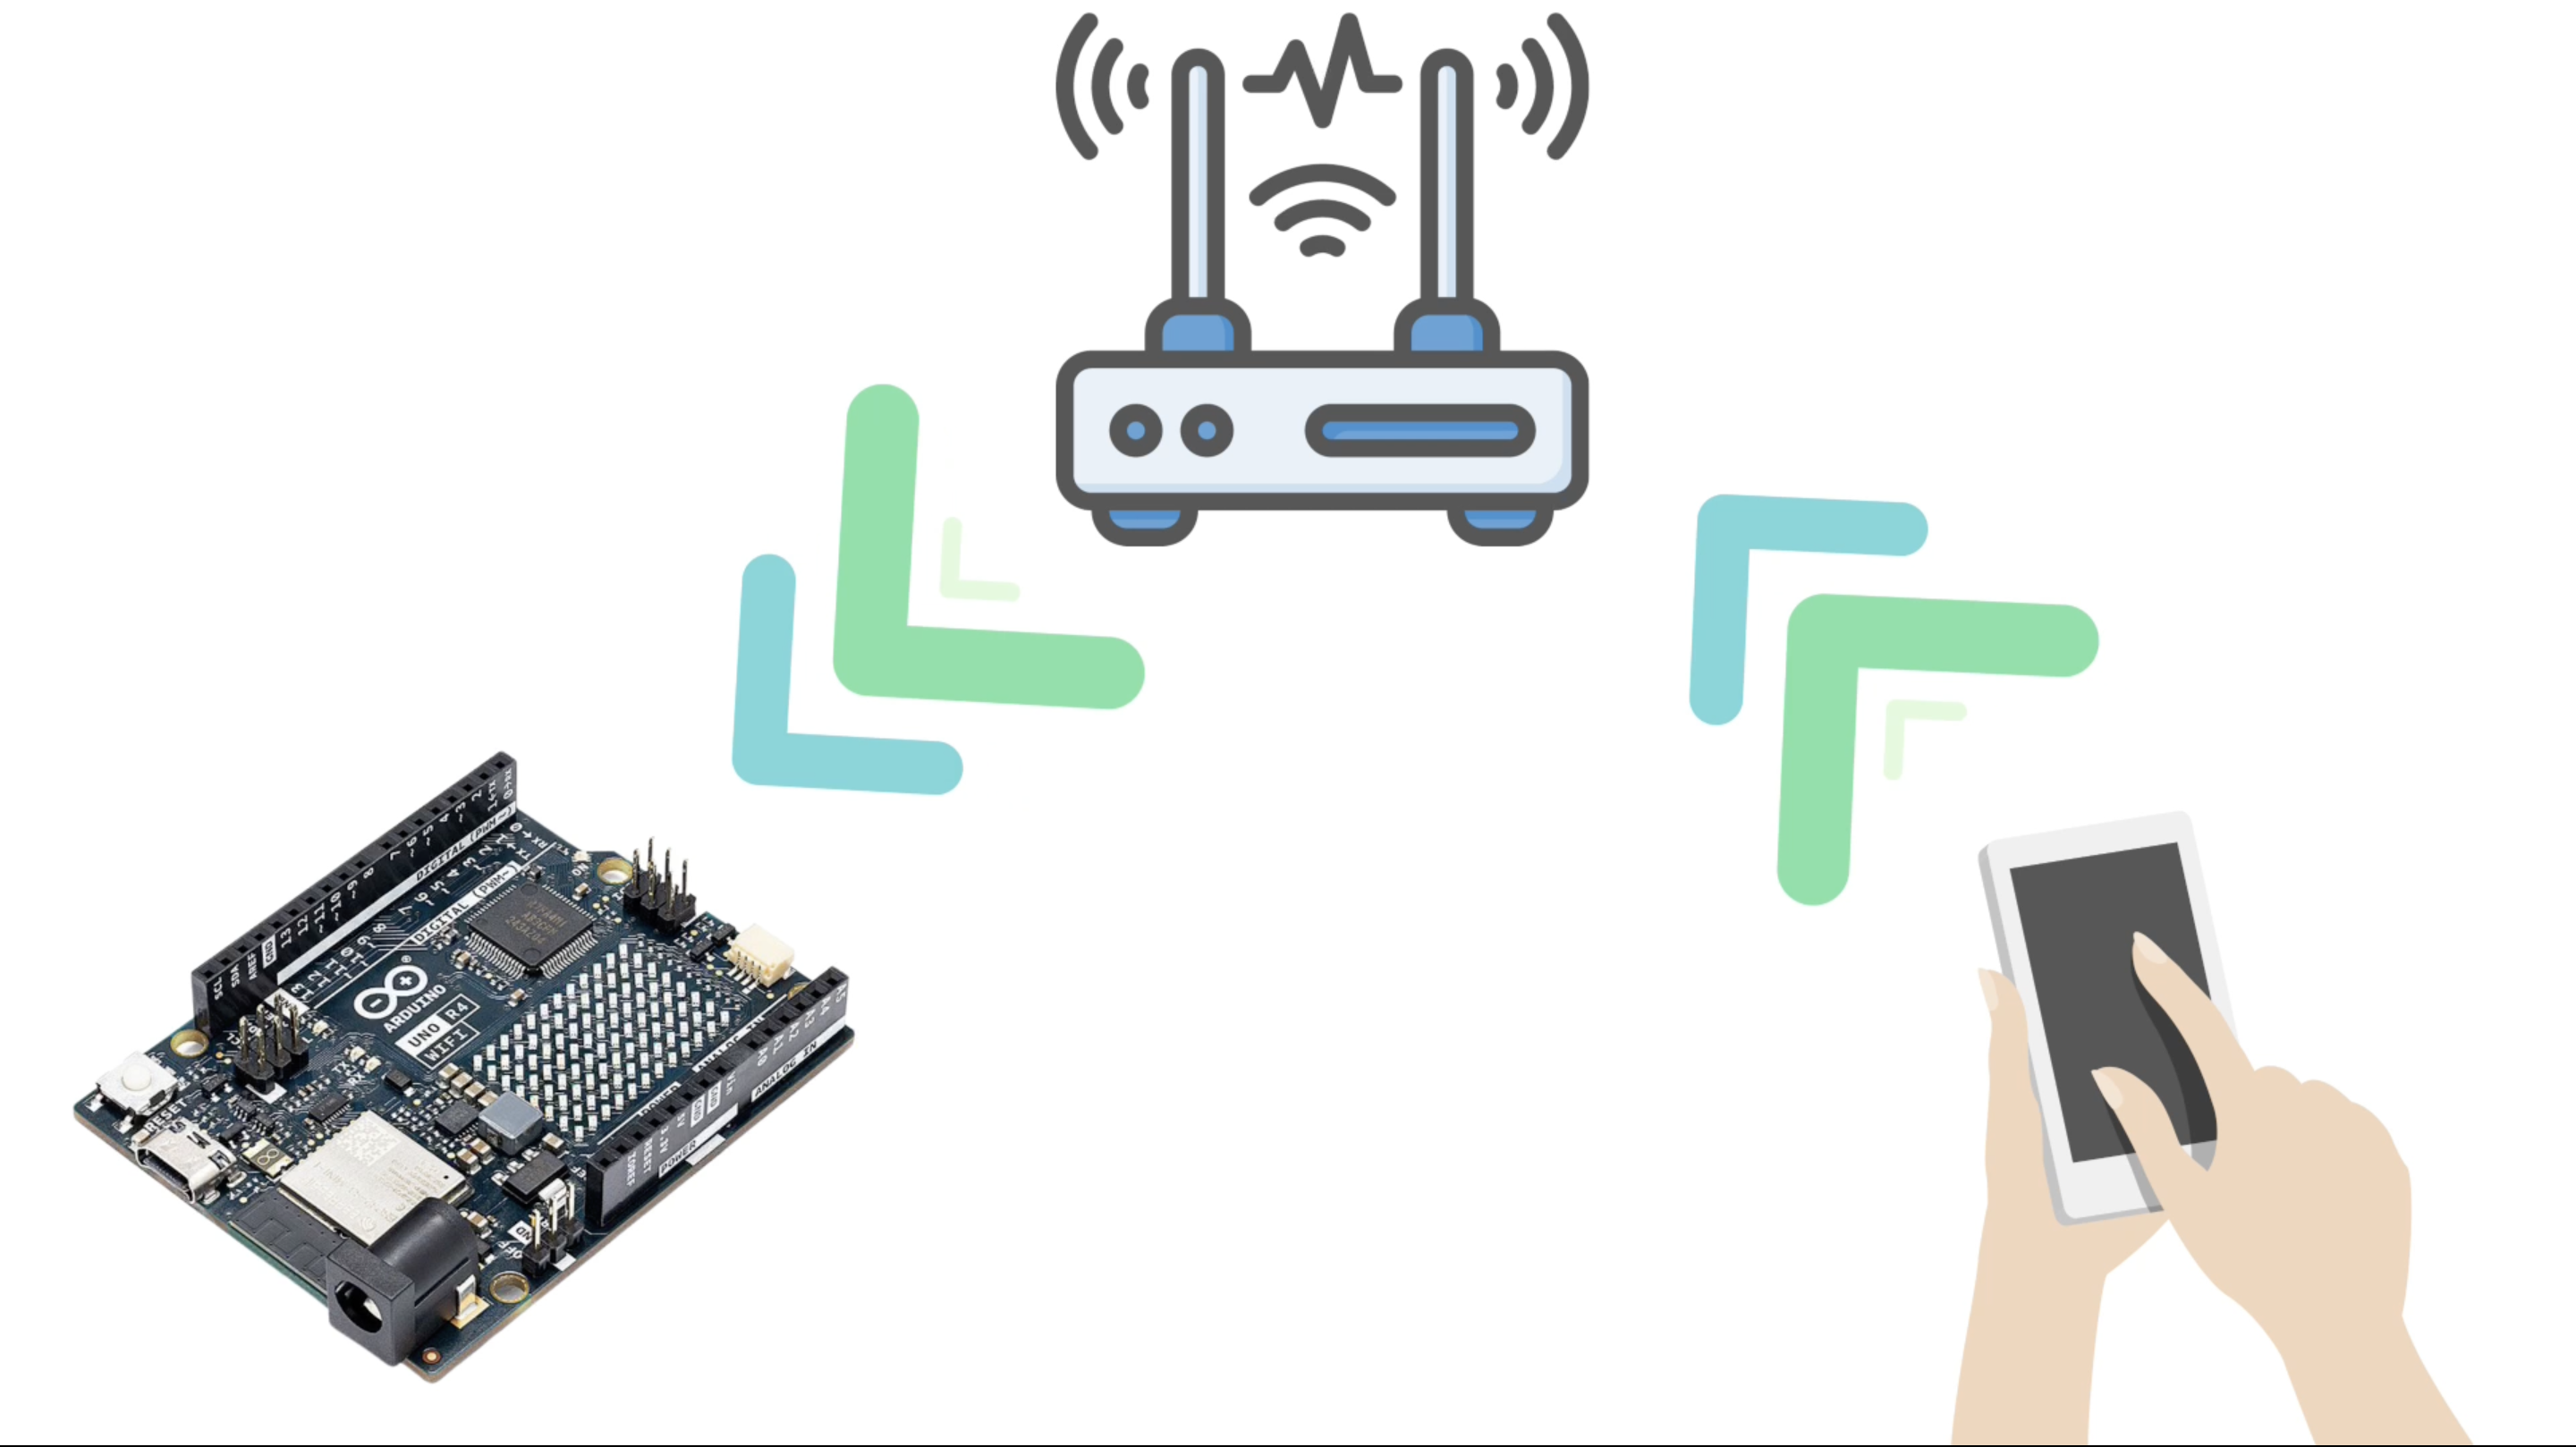 Arduino UNO R4: Introducing the new UNO R4 Minima and WiFi boards